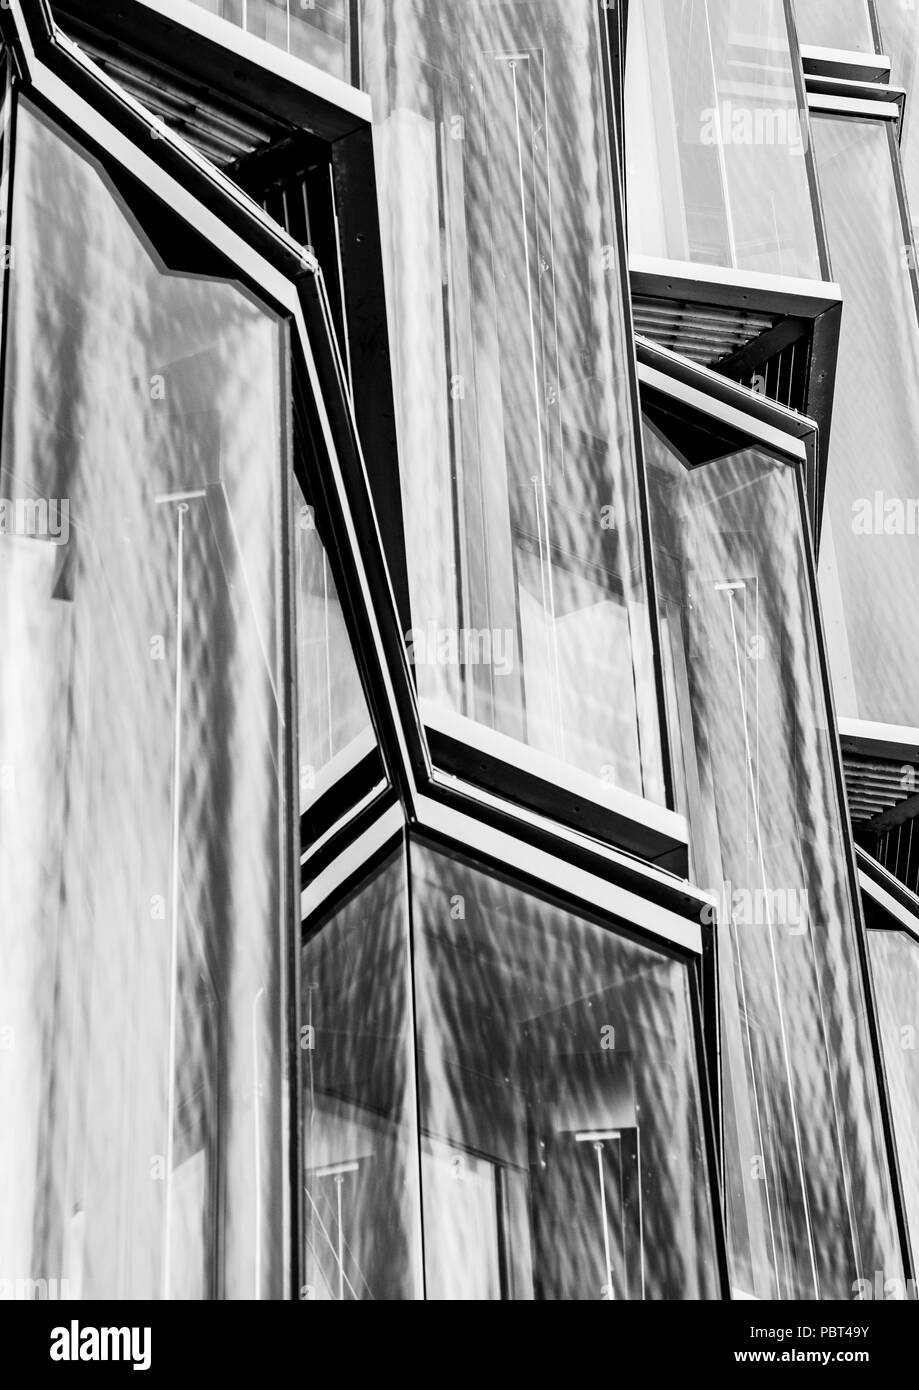 Berlin wider, Reflexionen von Gebäuden im Glas von anderen Gebäuden Stockfoto